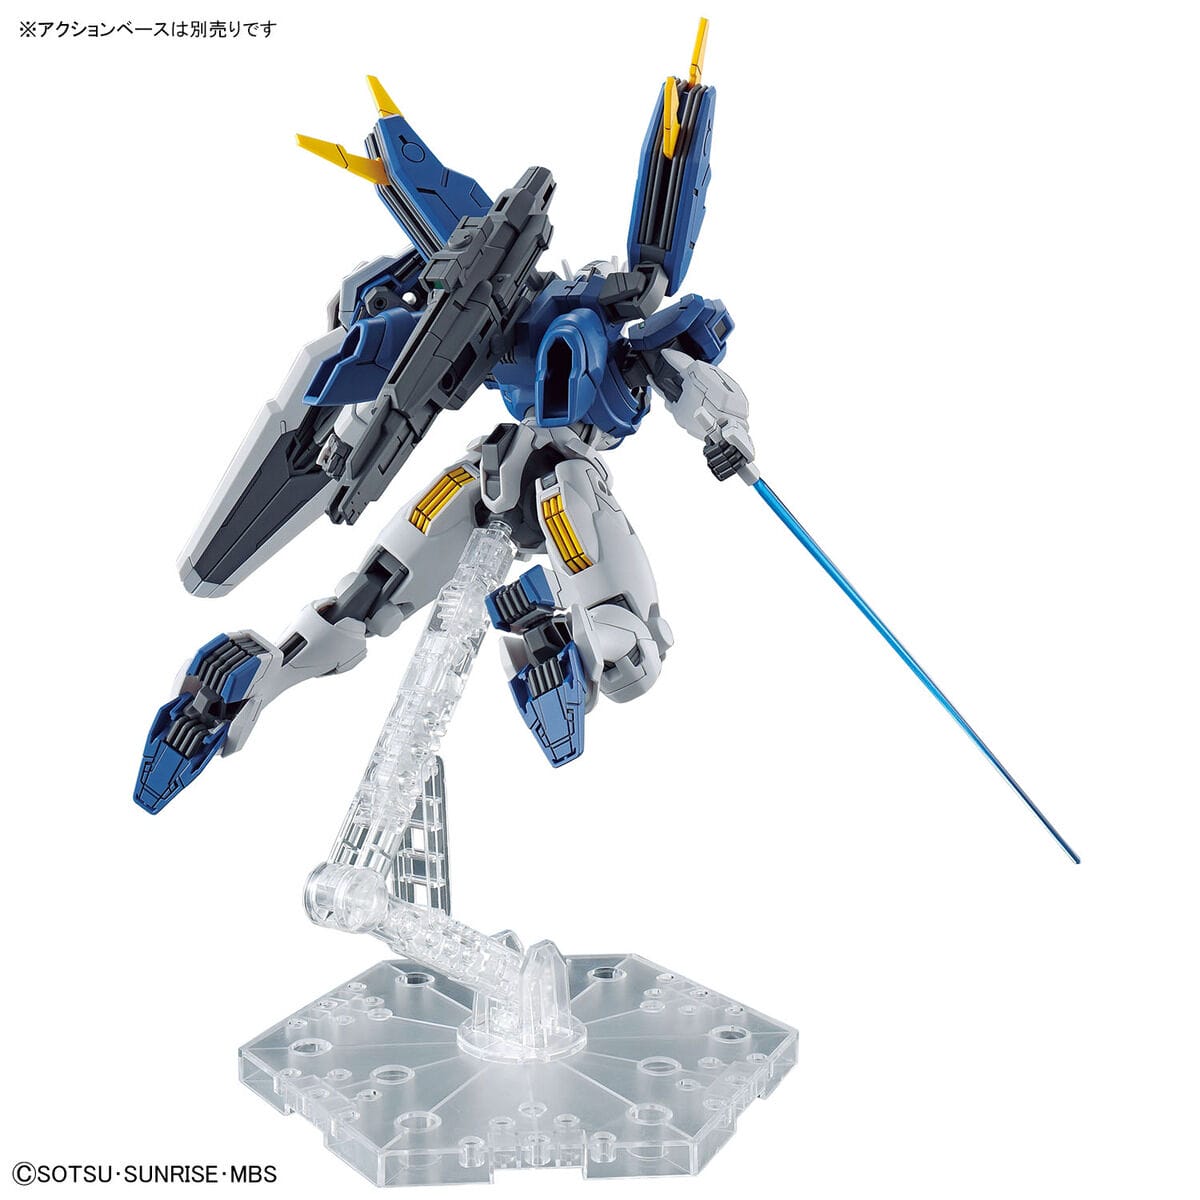 HG 1/144 Gundam Aerial Rebuild - Bandai - Glacier Hobbies